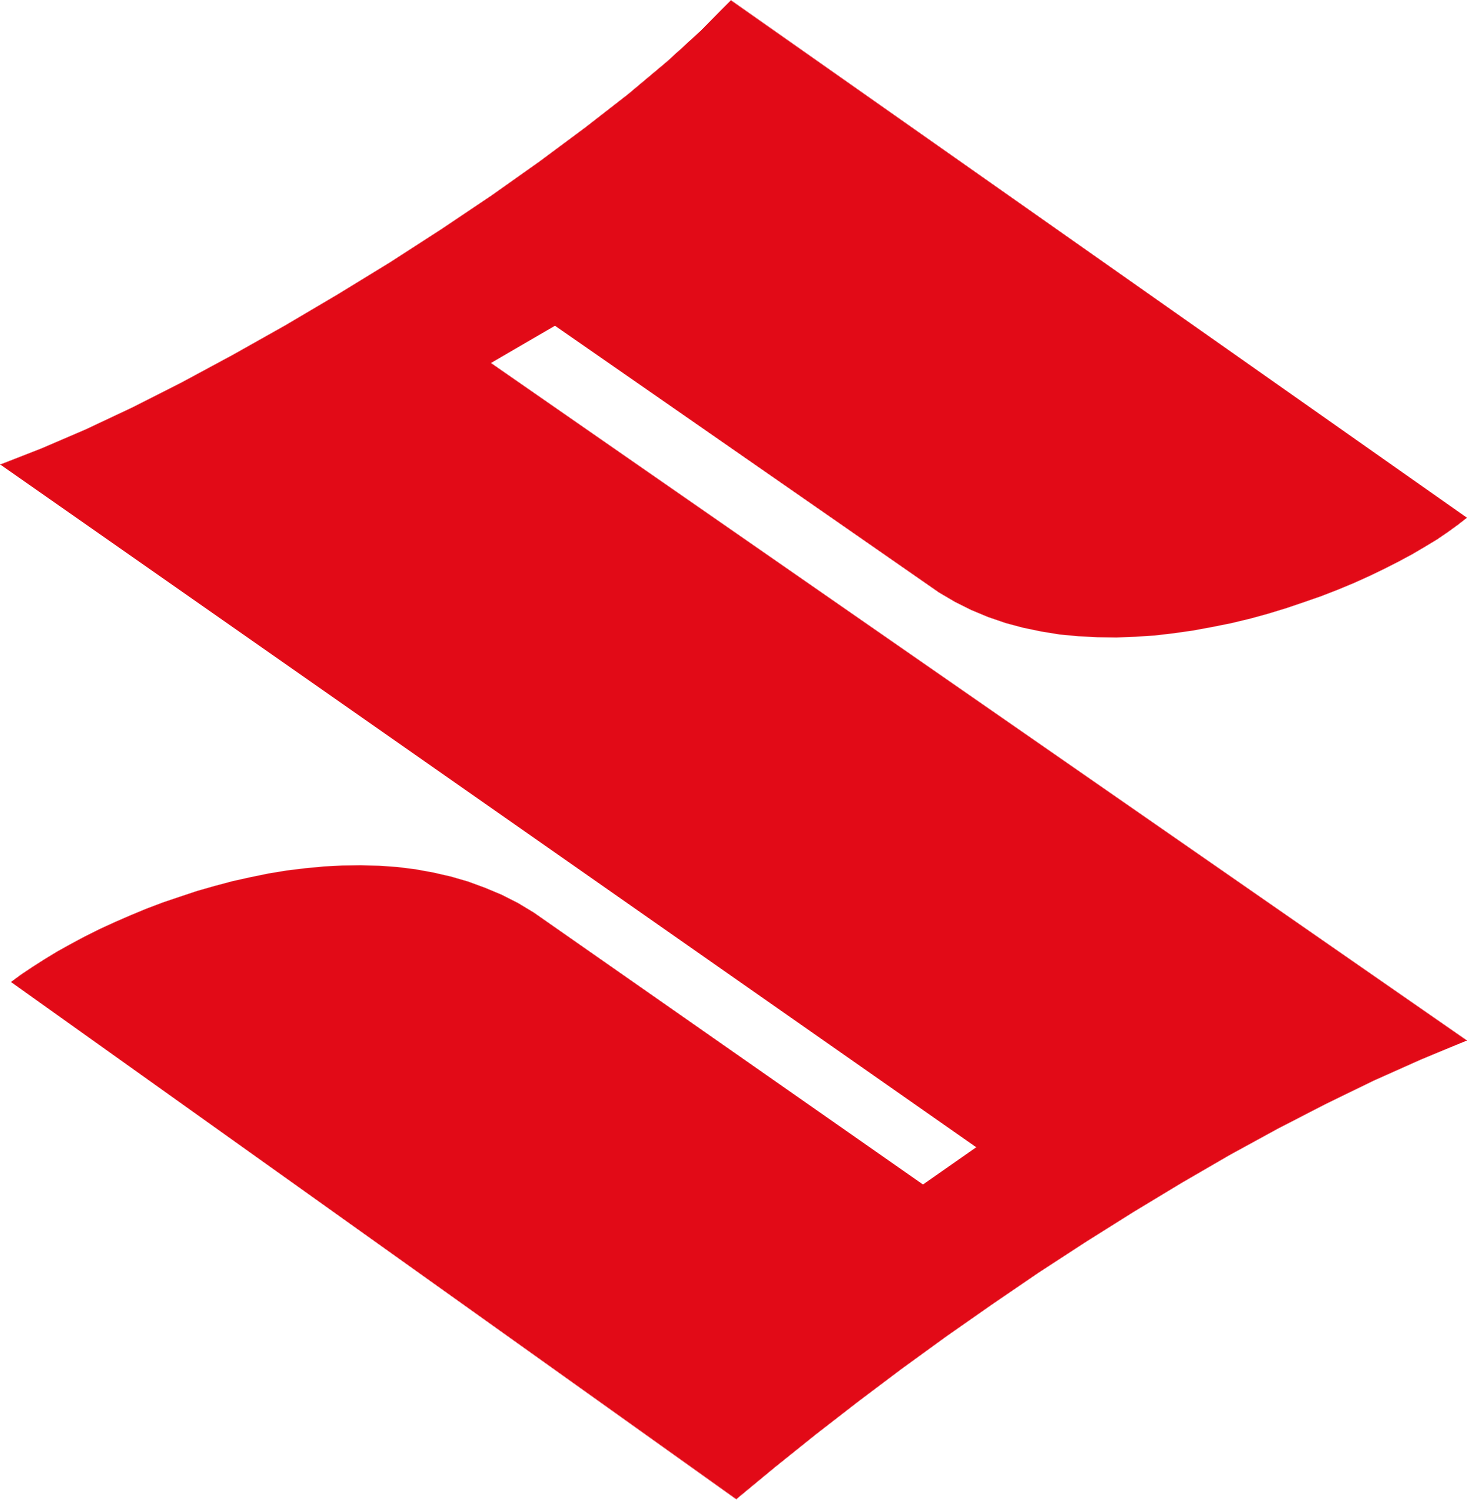 suzuki logo png